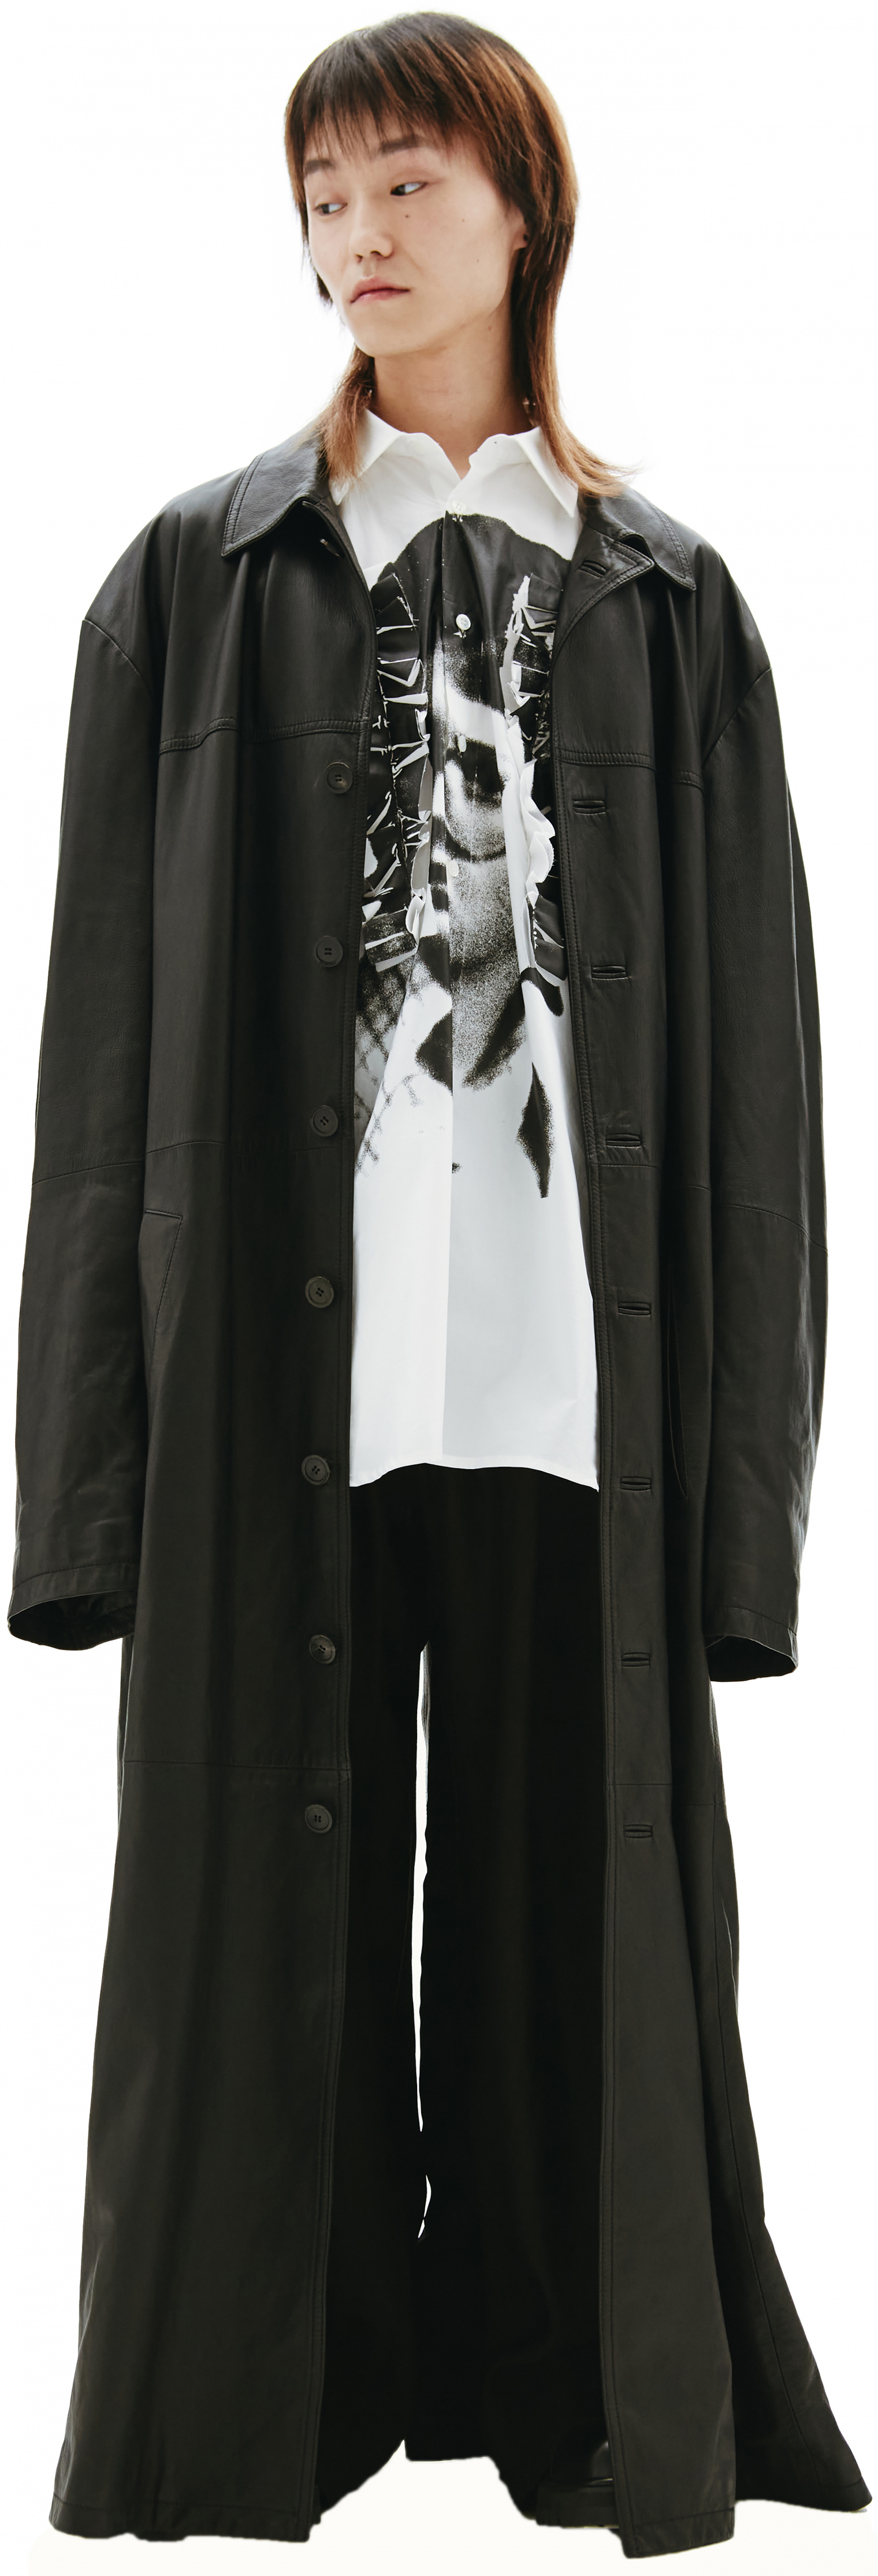 Balenciaga Black Leather Coat